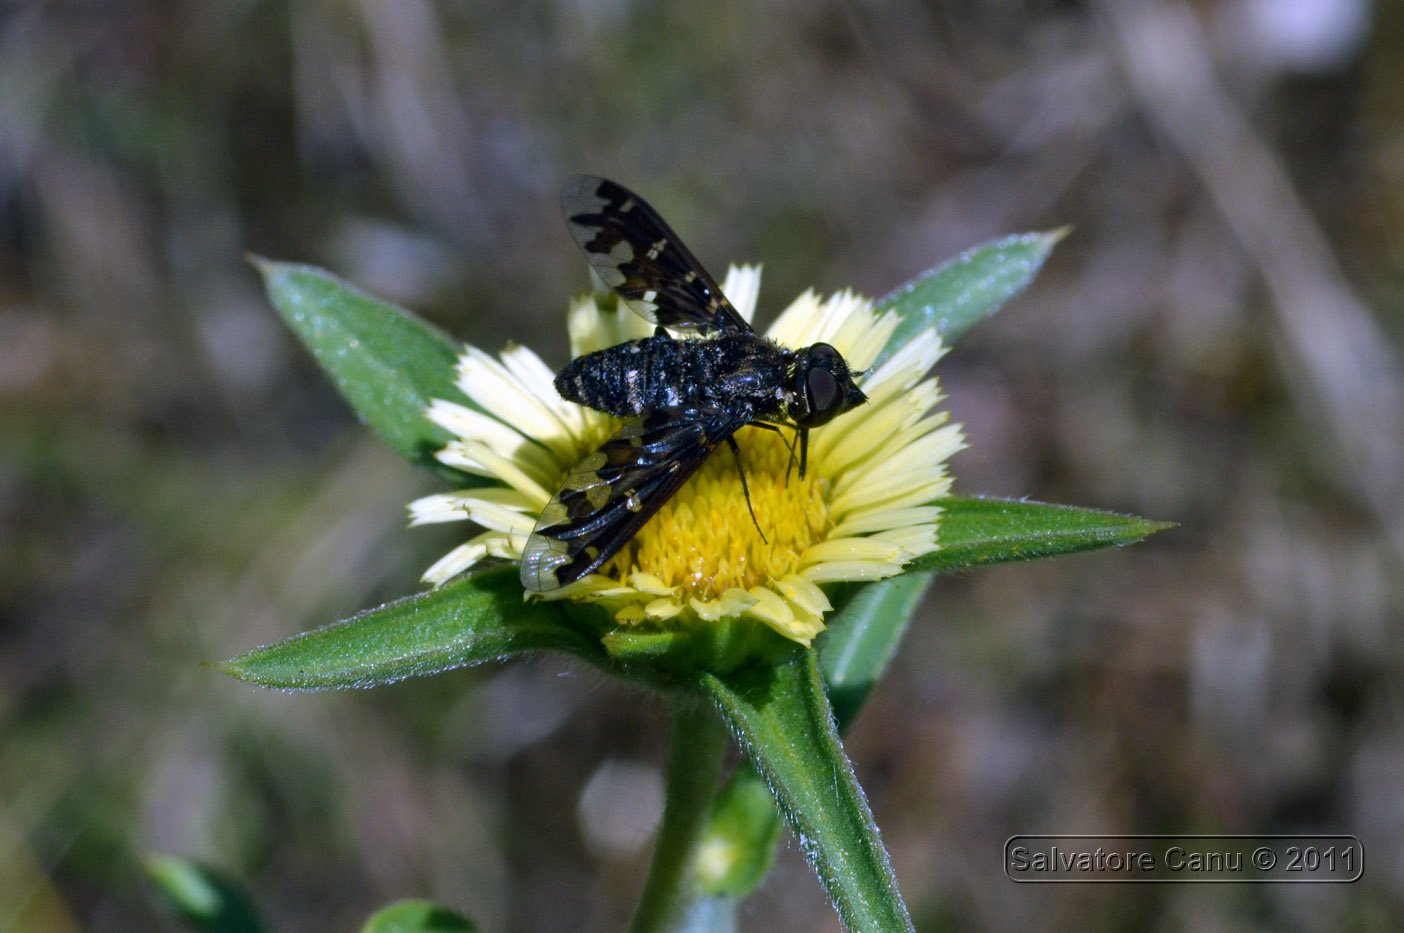 Exoprosopa jacchus (Bombyliidae)